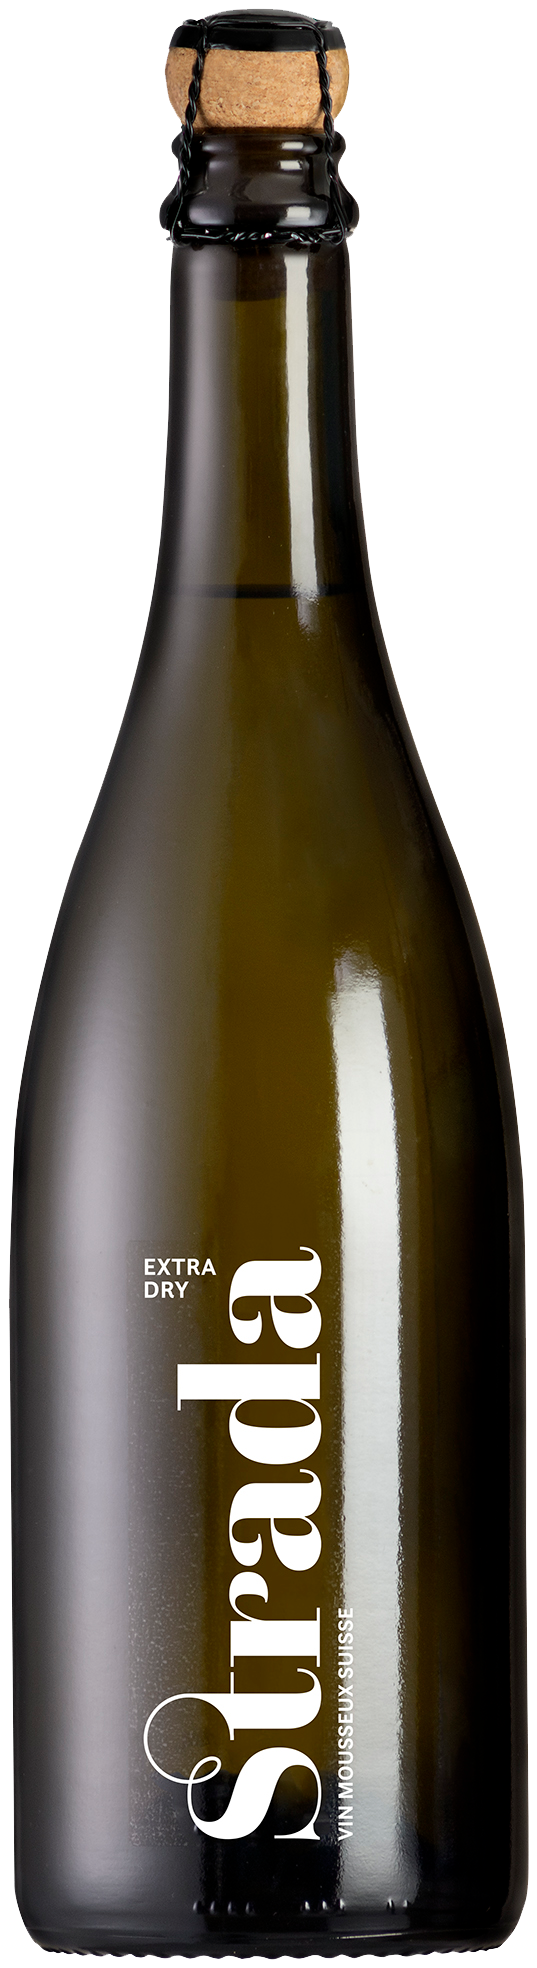 Der preisgekrönte schweizer Schaumwein aus Hallau der Rimuss & Strada Wein AG ist der Strada Extra Dry. Passend für jeden Apéro.